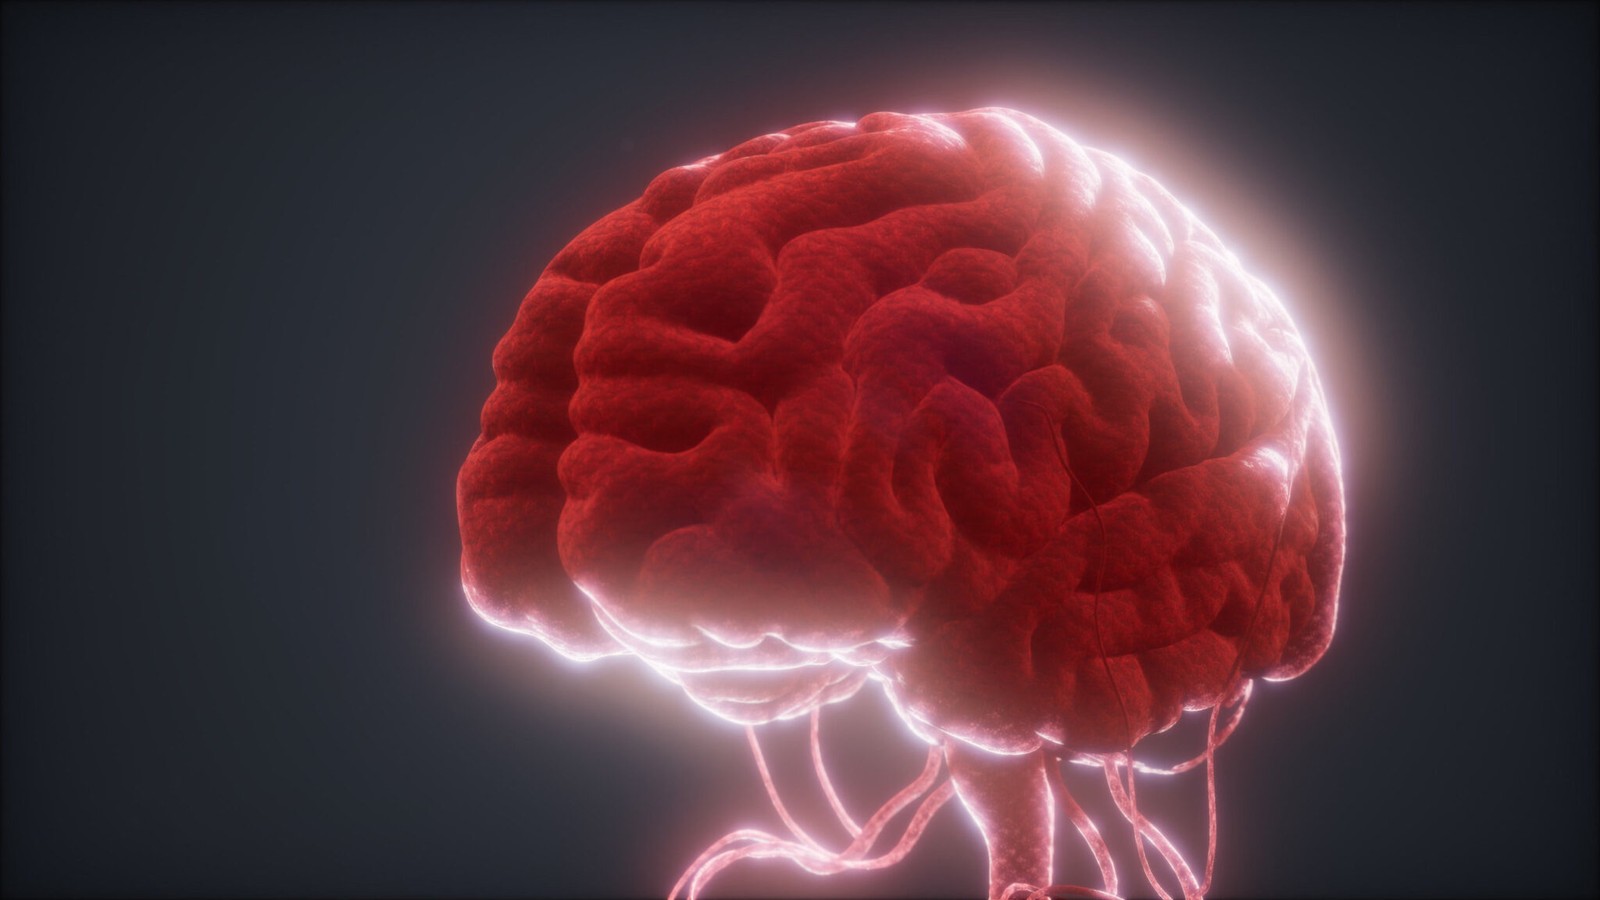 Implanty umieszczane w mózgu umożliwią kontrolę przestępczości. Nadchodzi przyszłość rodem z science-fiction